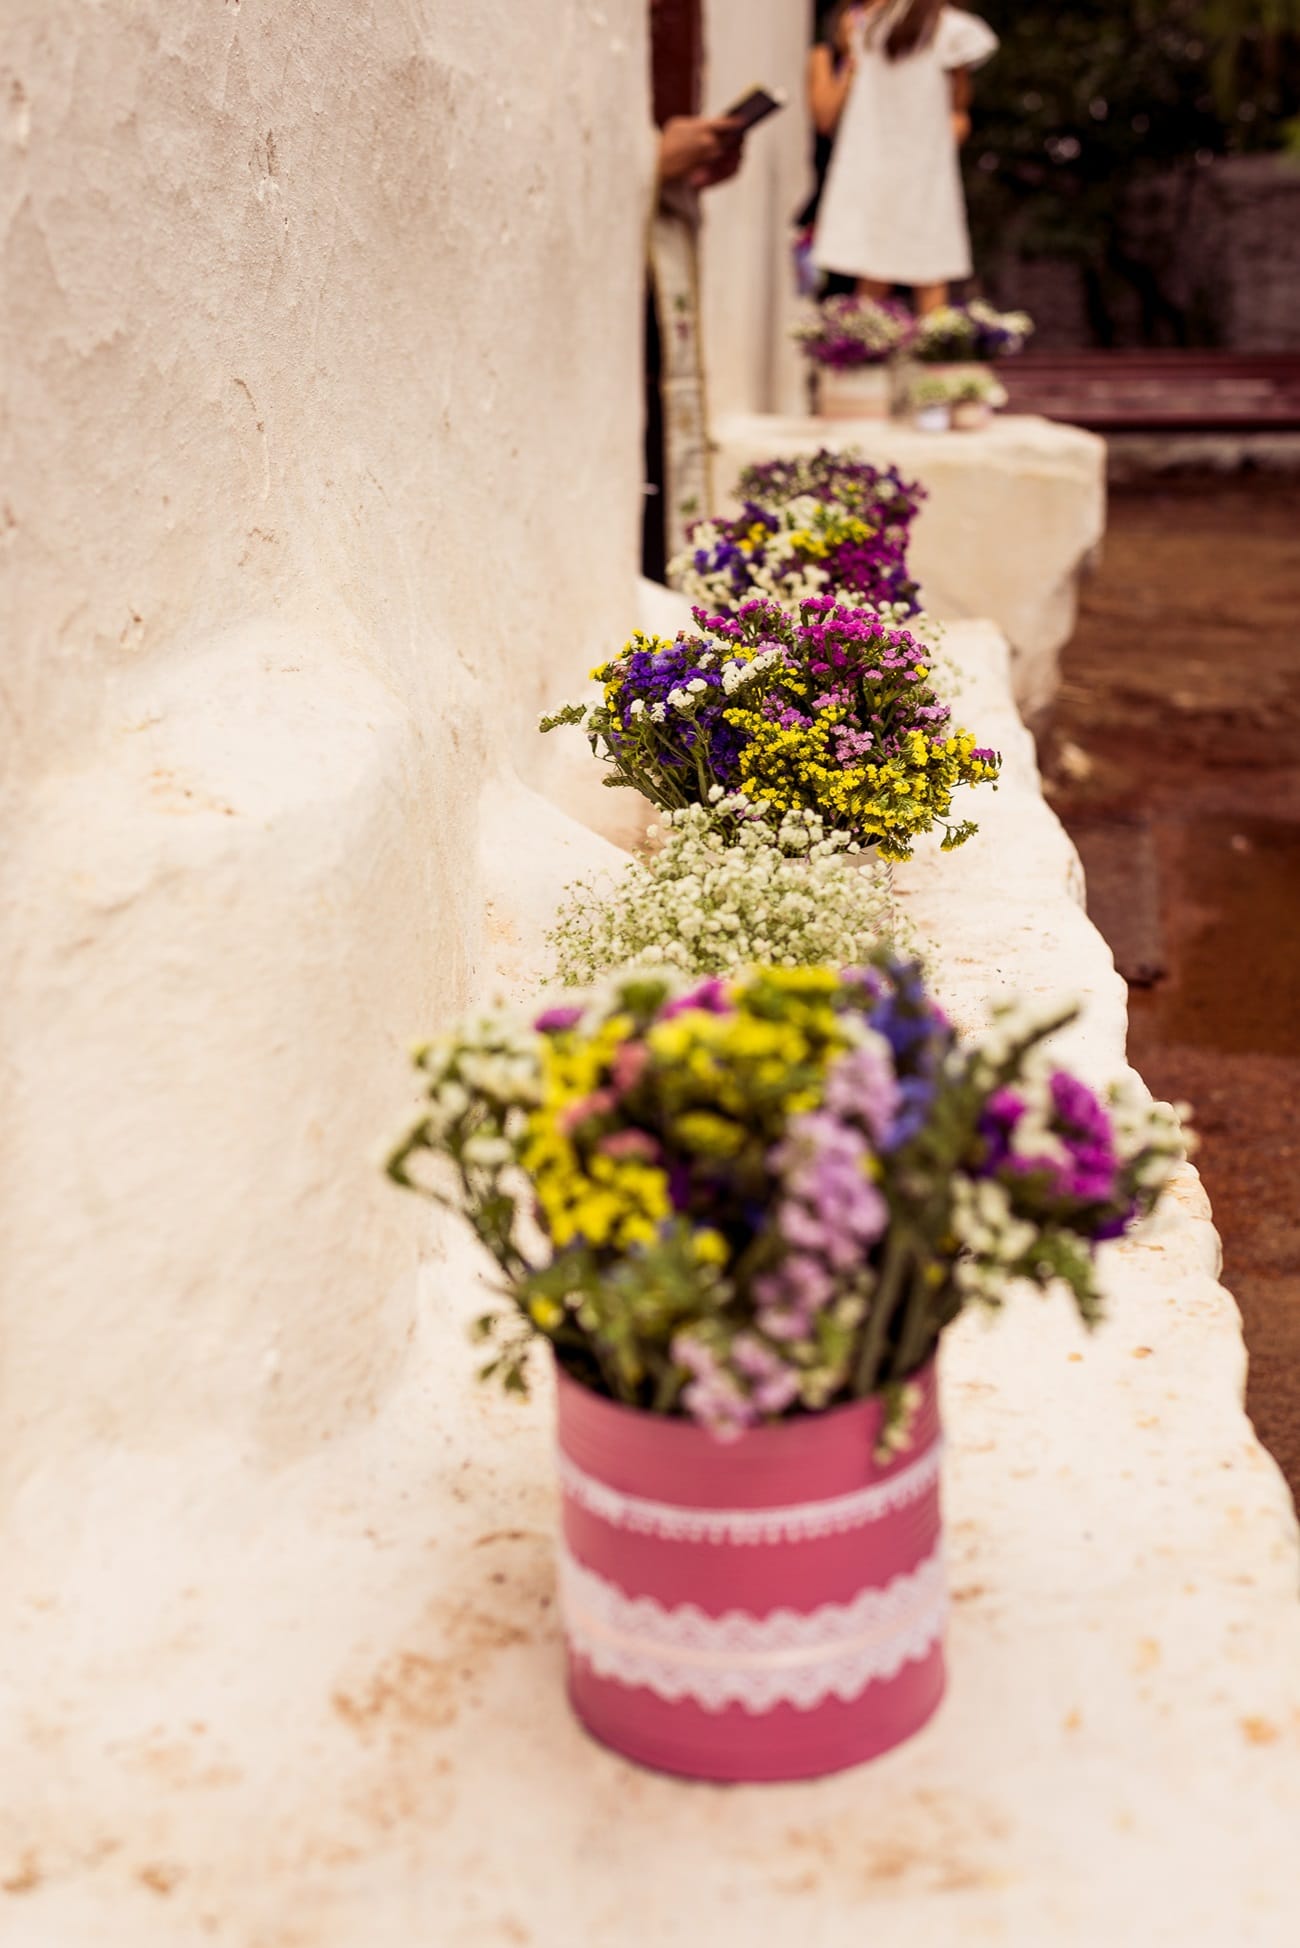 Rustic διακόσμηση γάμου με χρωματιστά λουλούδια του αγρού